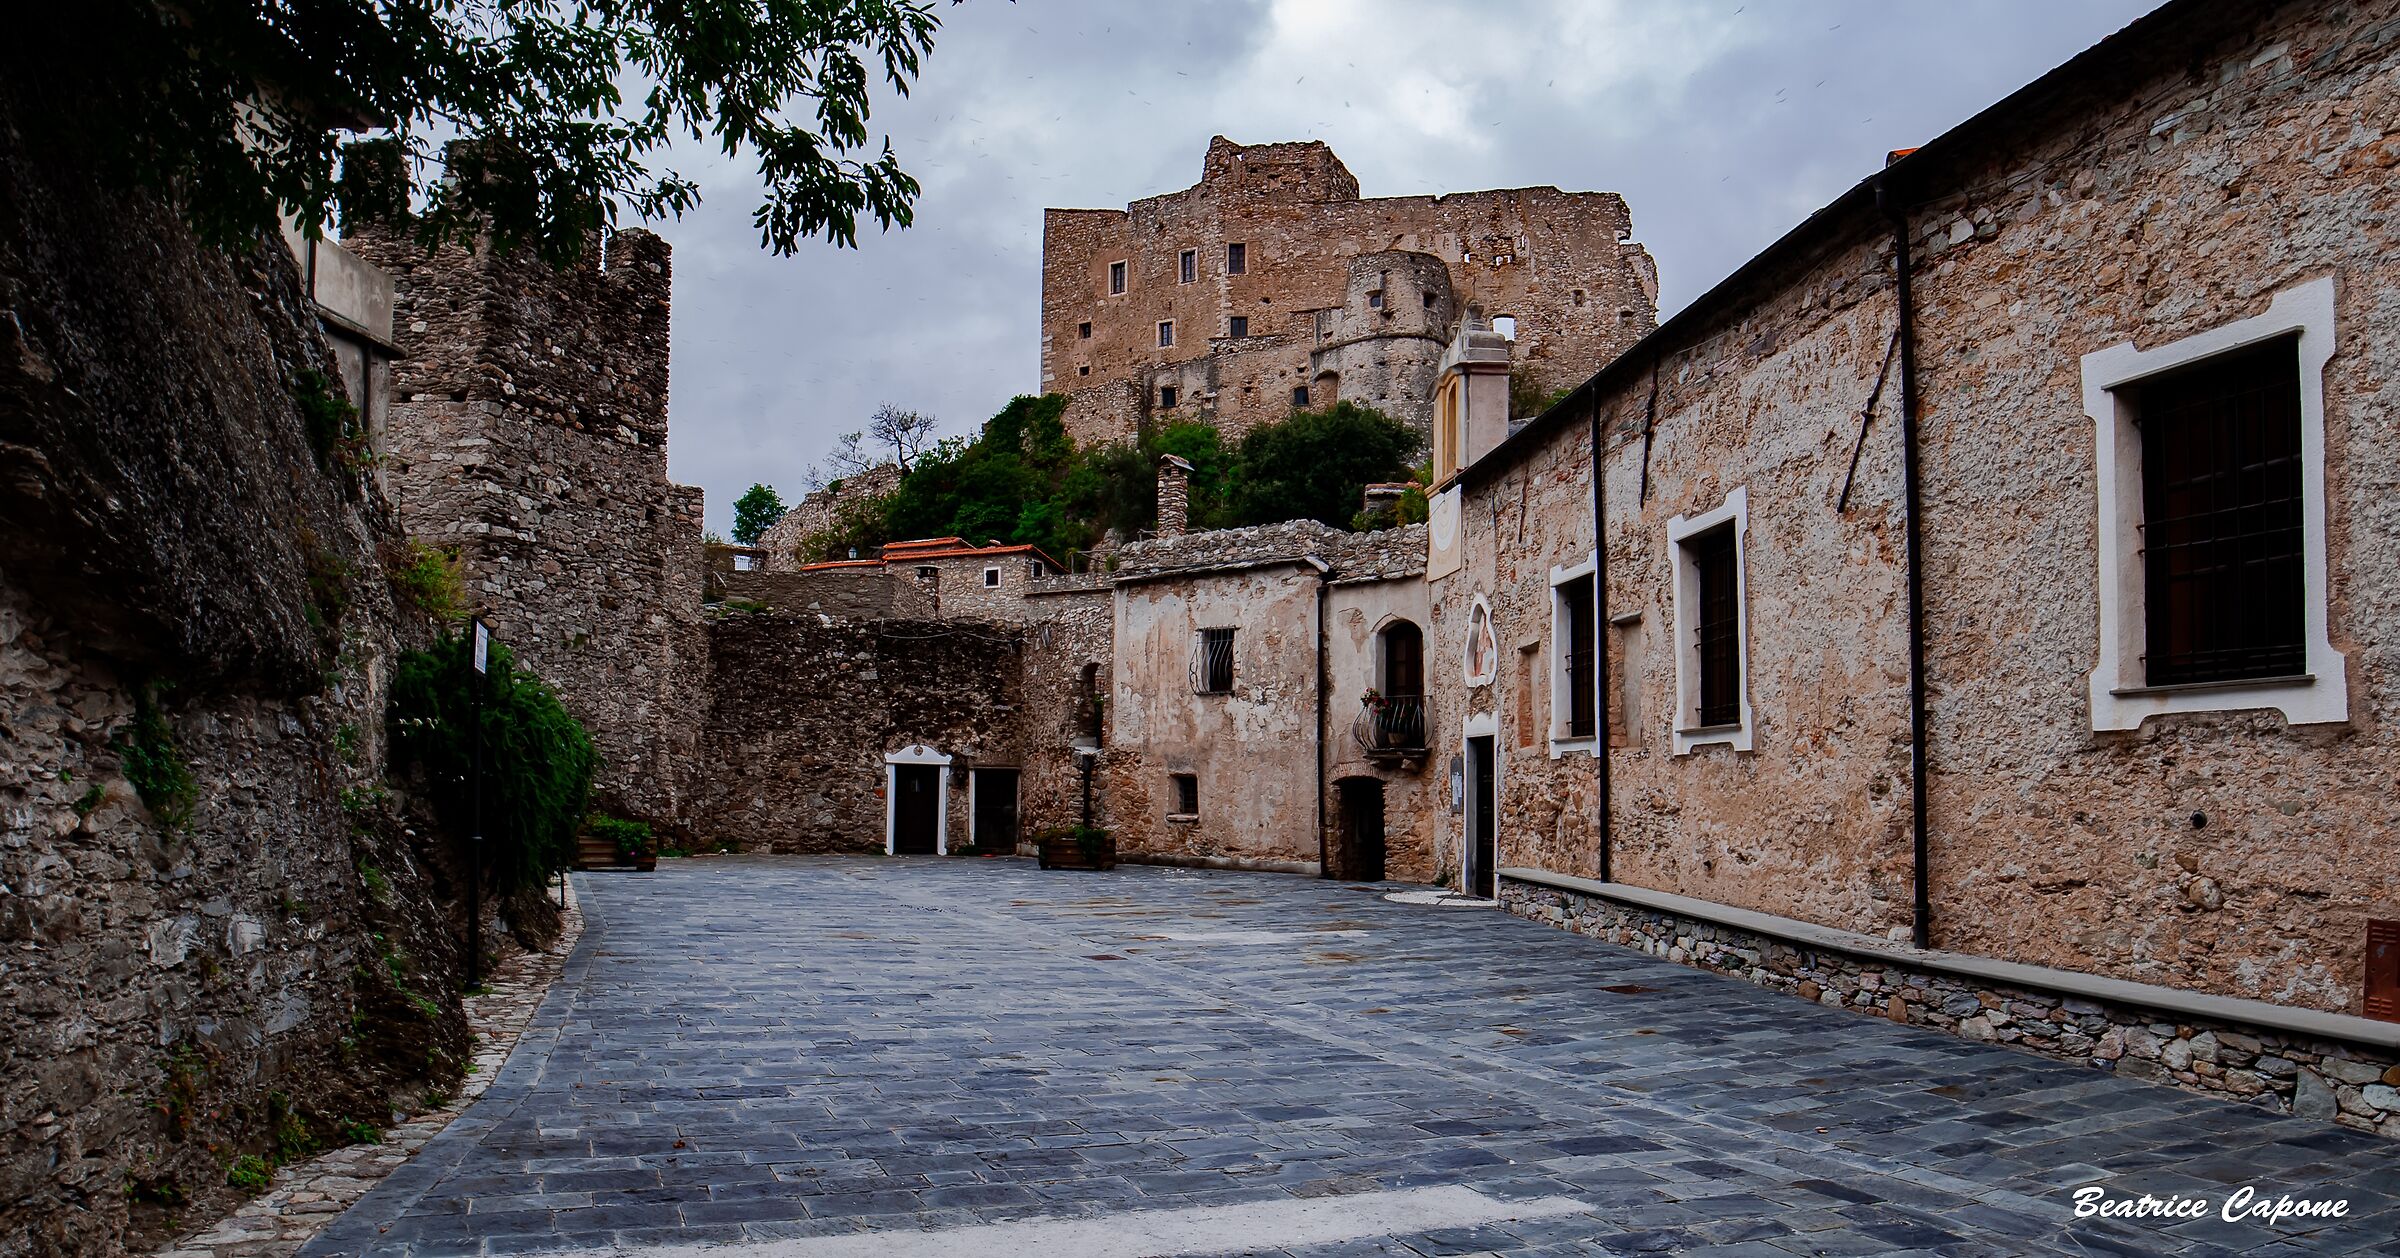 Castelvecchio di Rocca Barbena (Savona)...